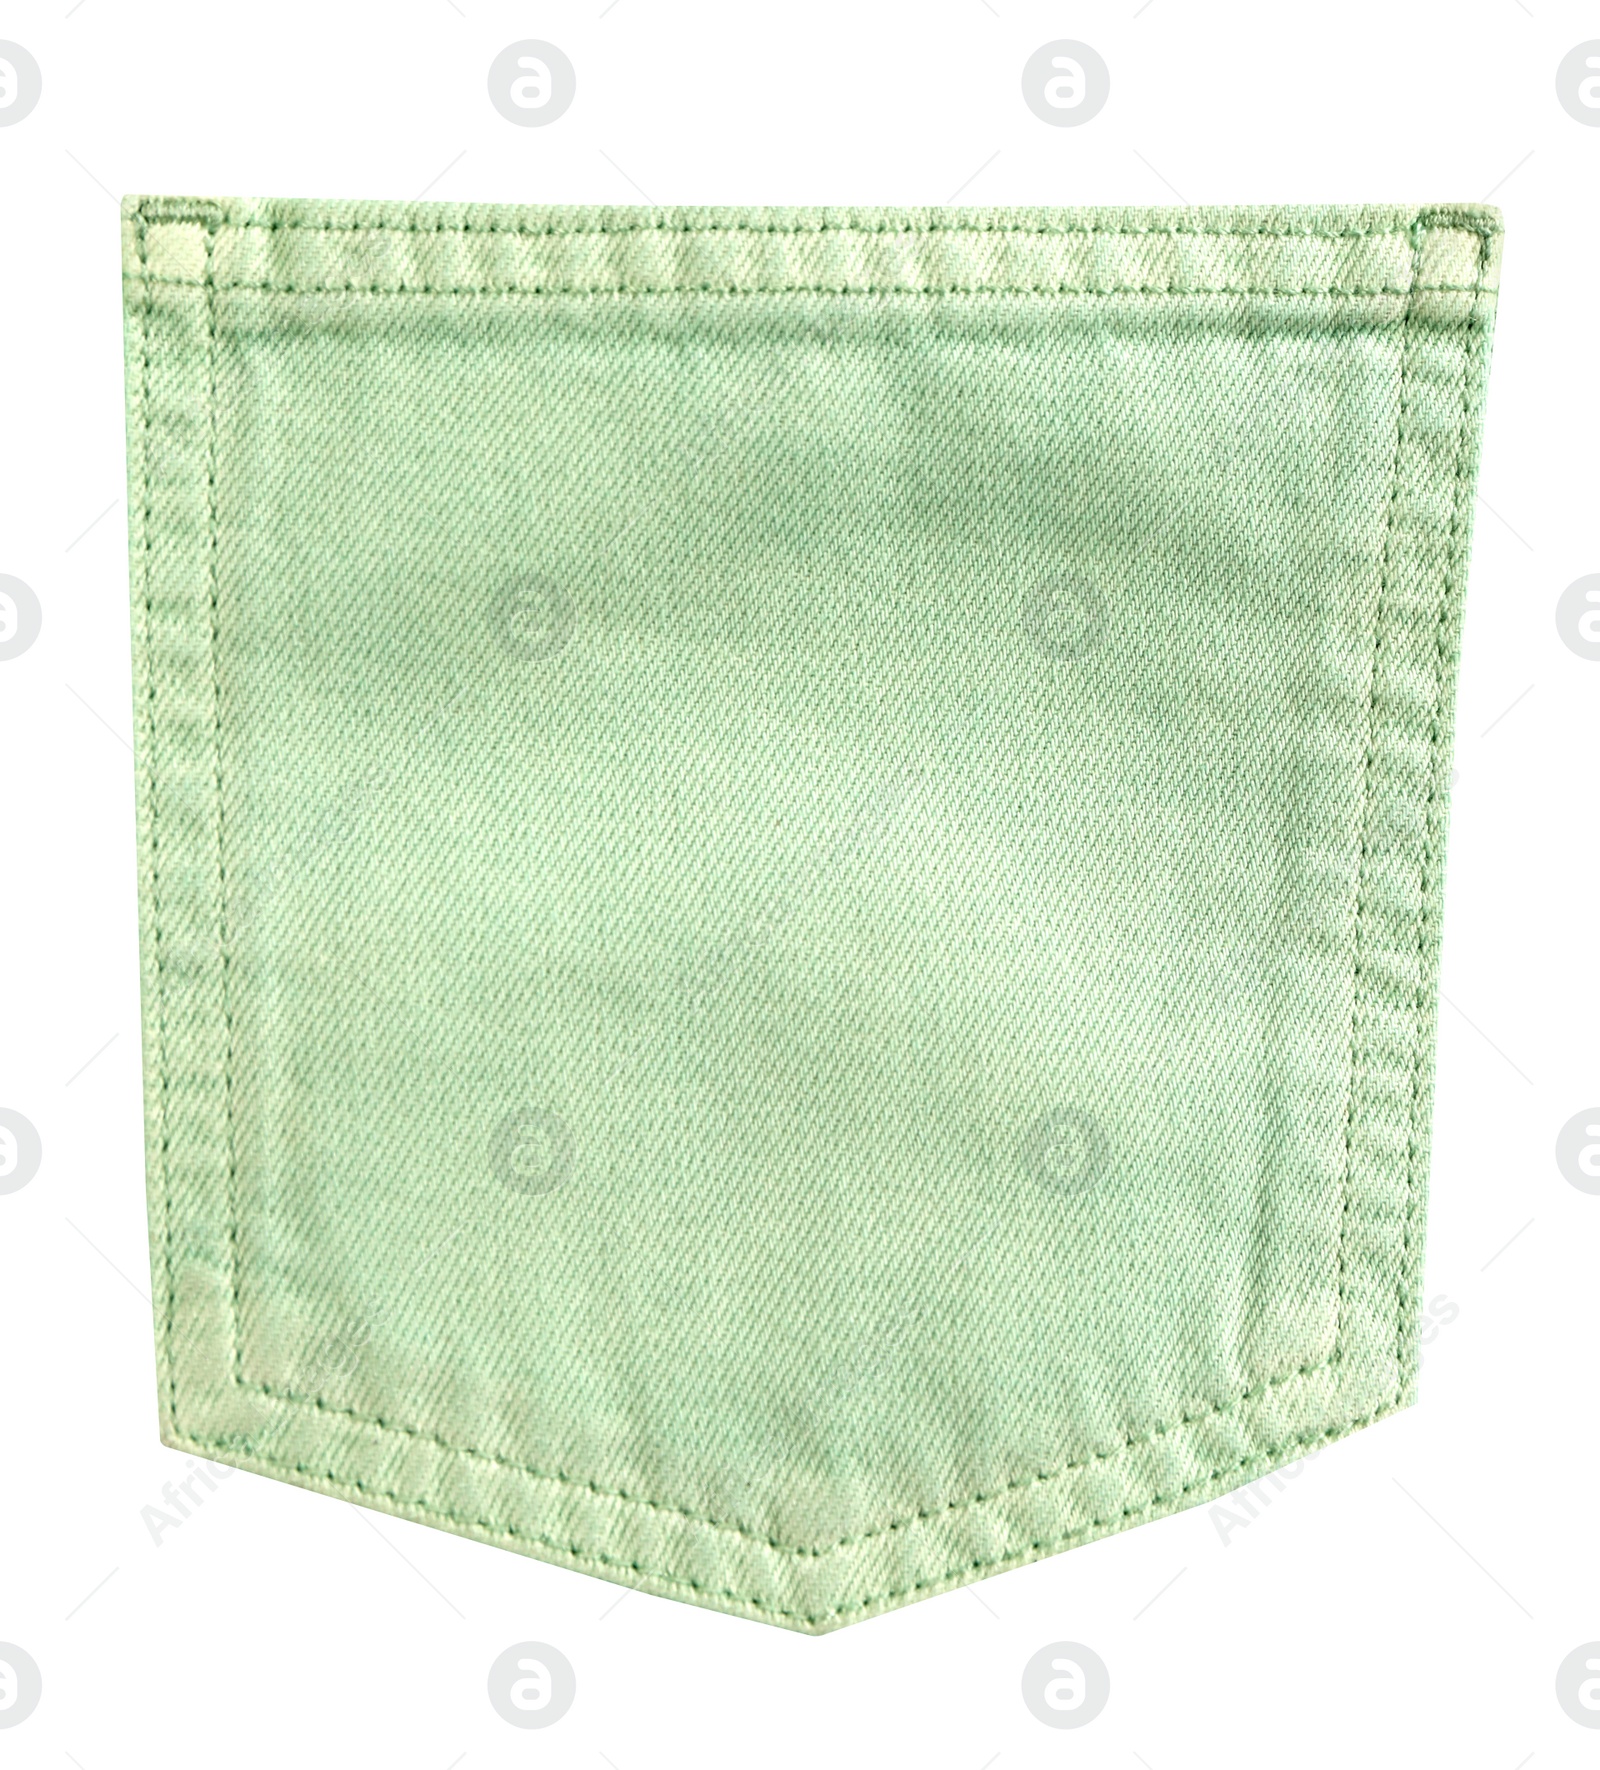 Image of Light green denim pocket isolated on white